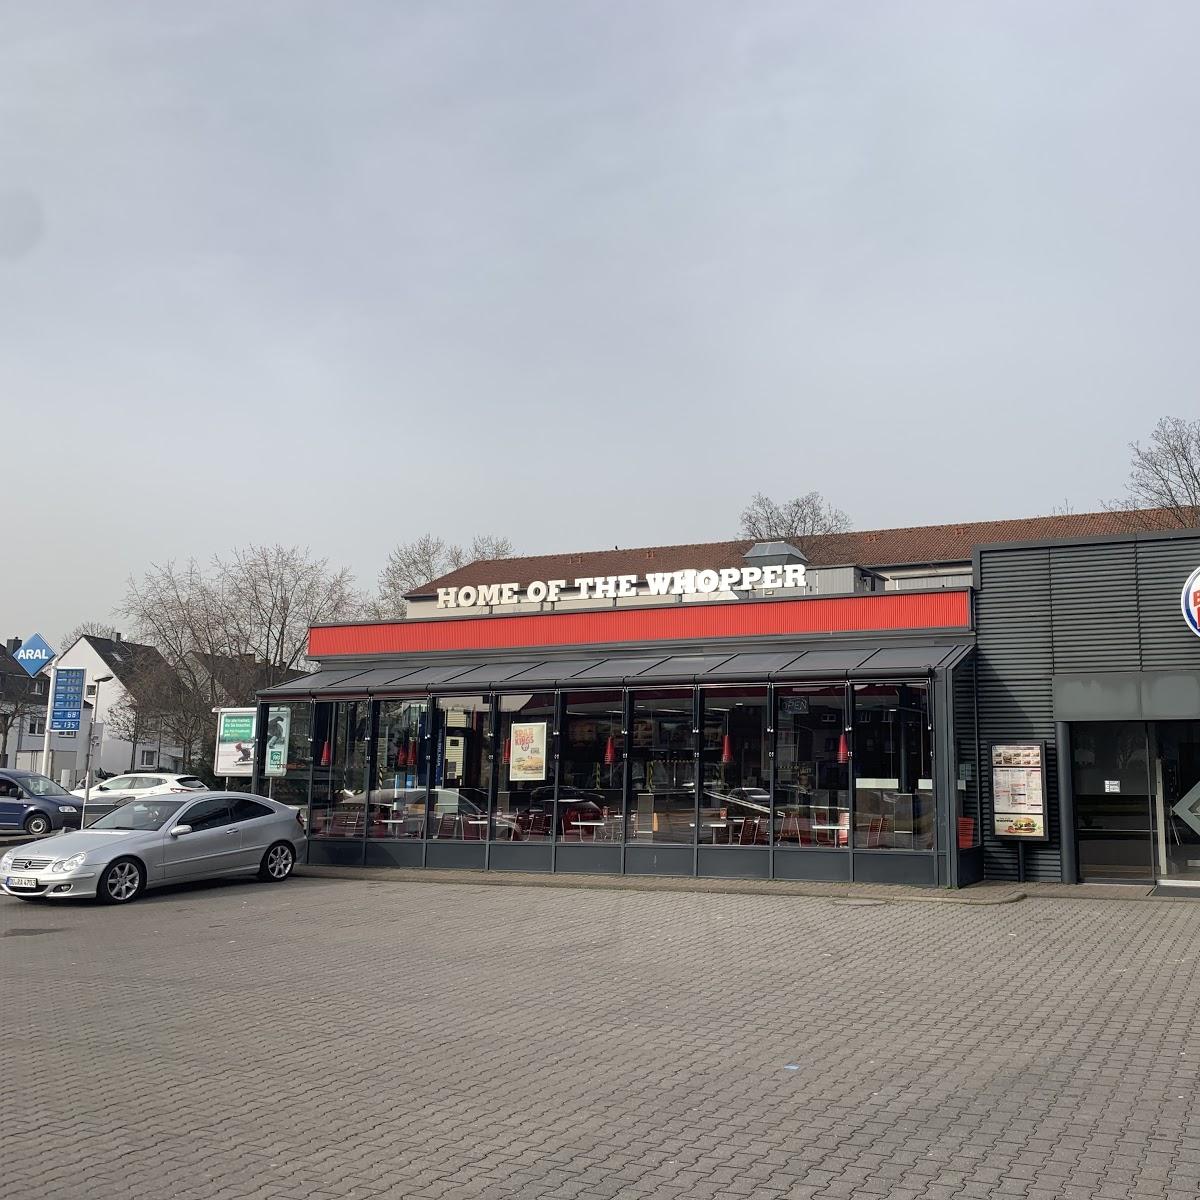 Restaurant "Burger King" in Düsseldorf